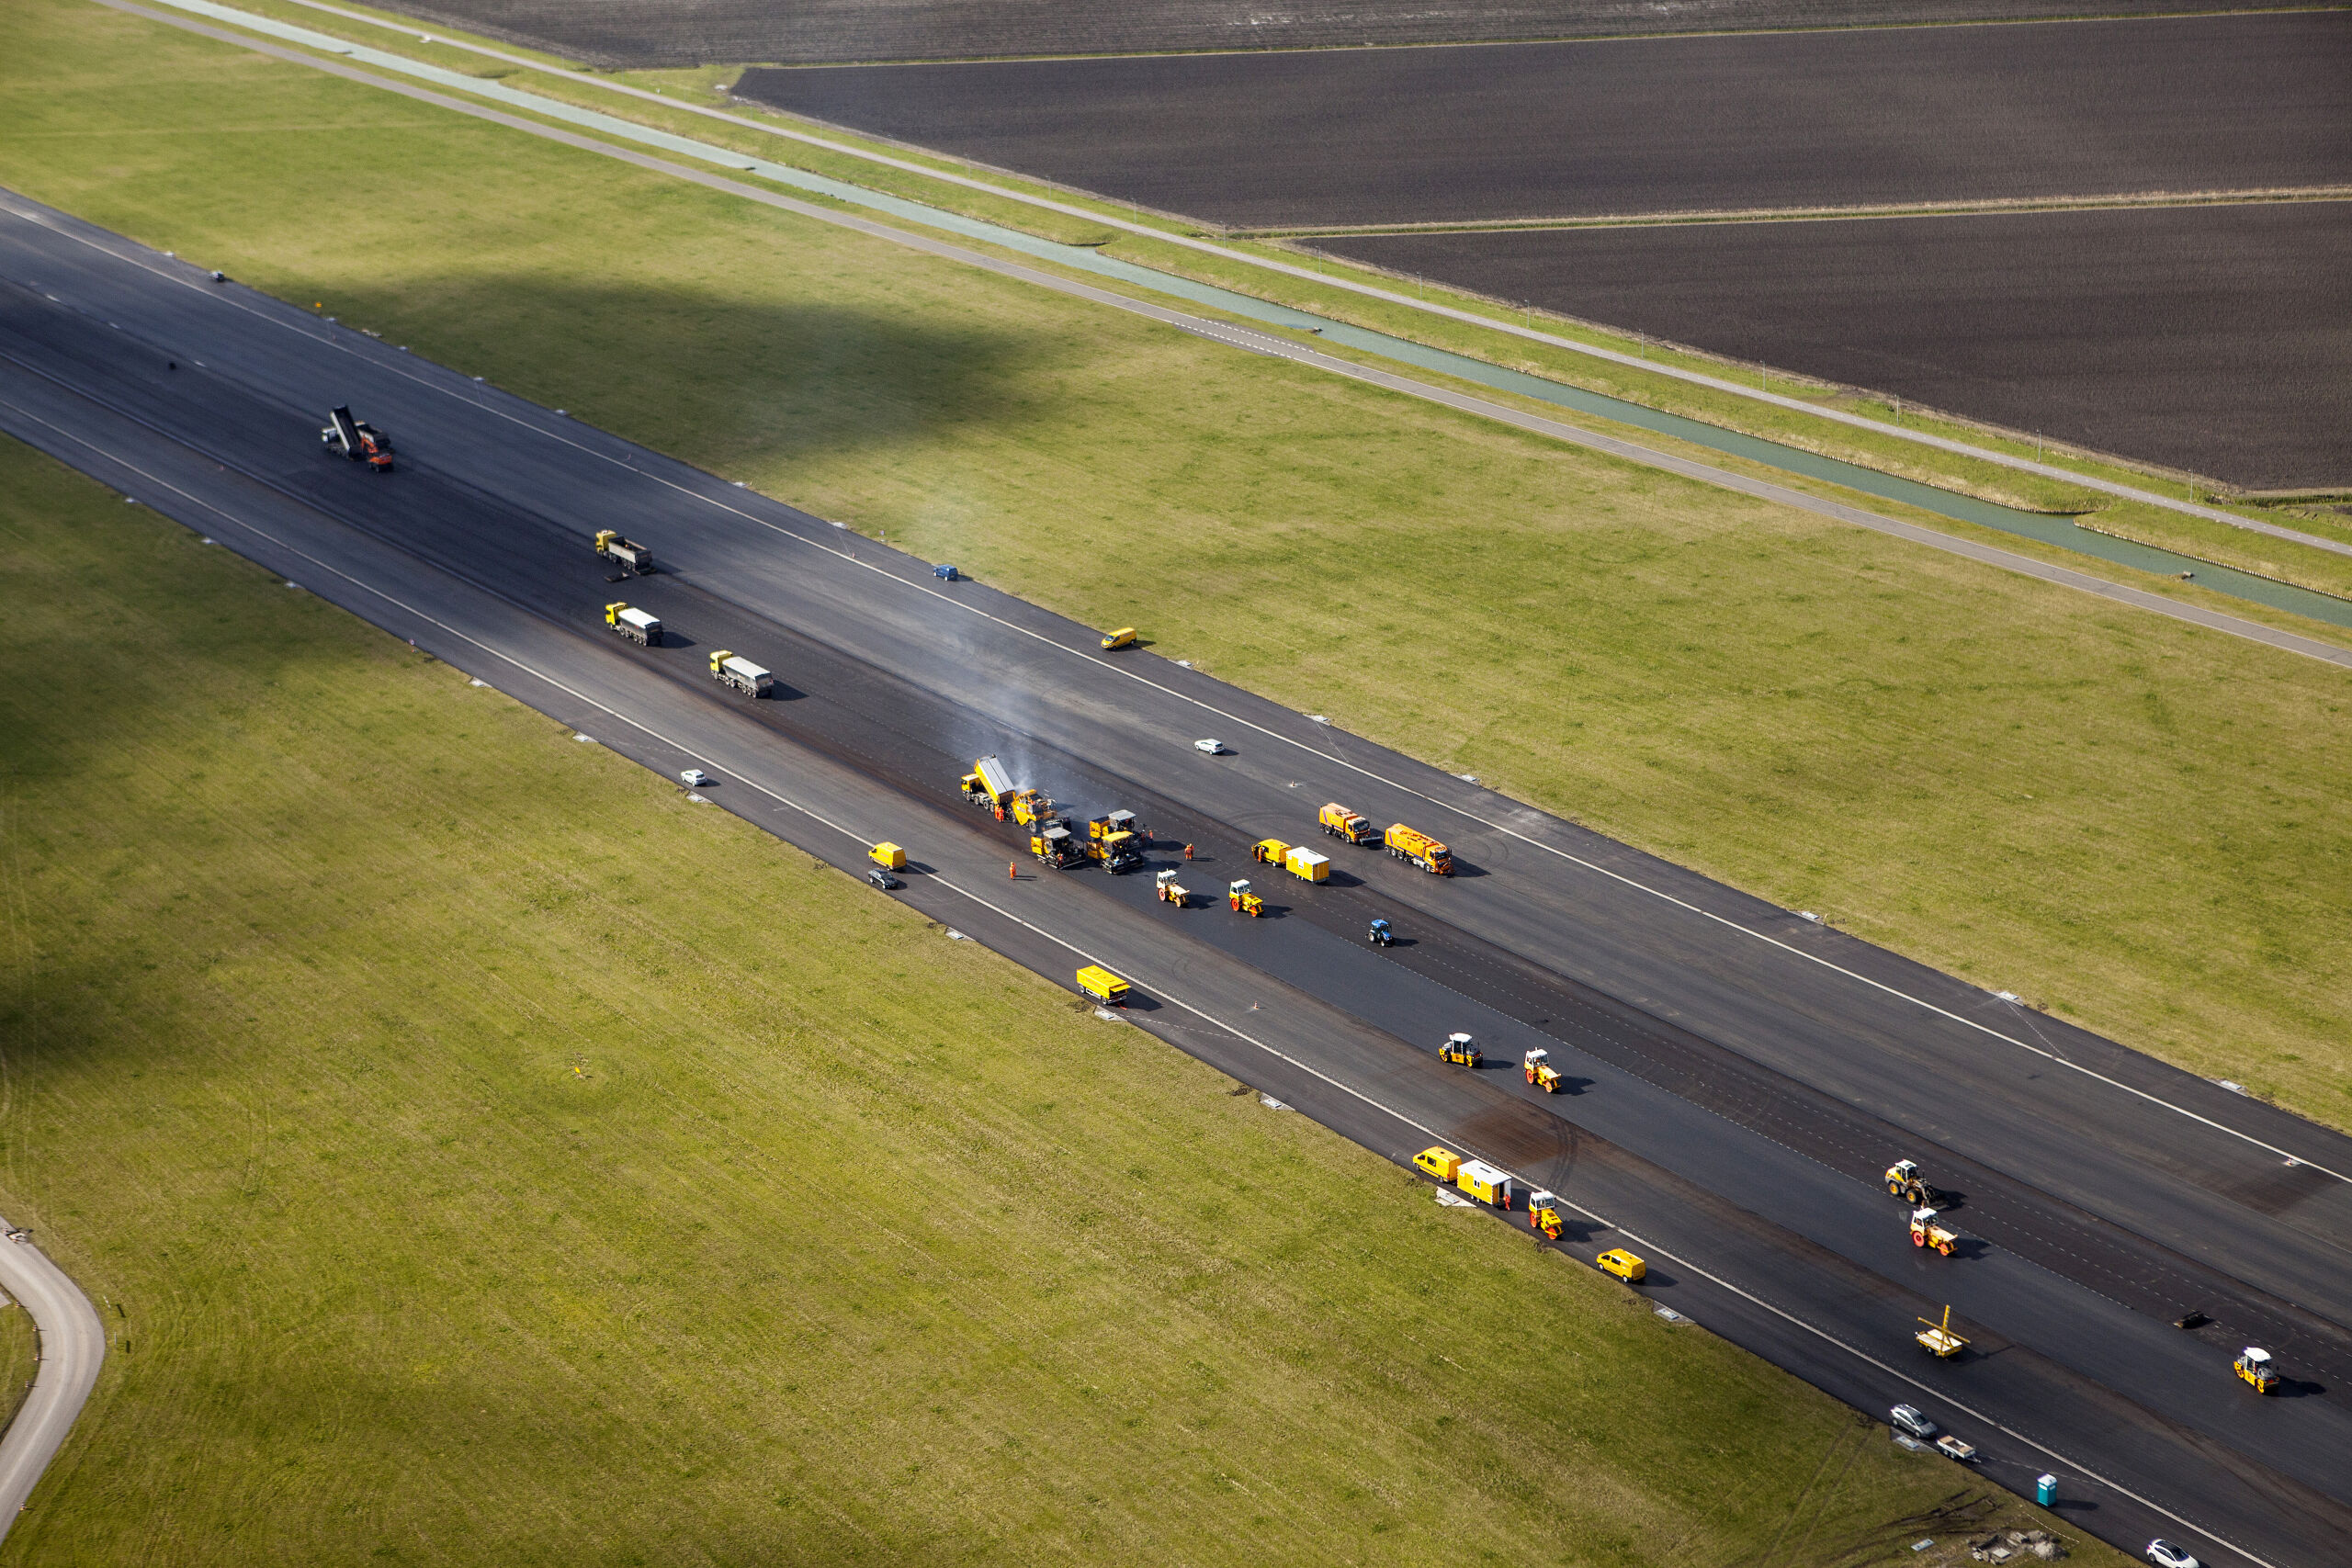 Heijmans asfalteert de Polderbaan met Flightflex. De baan wordt binnenkort weer in gebruik genomen